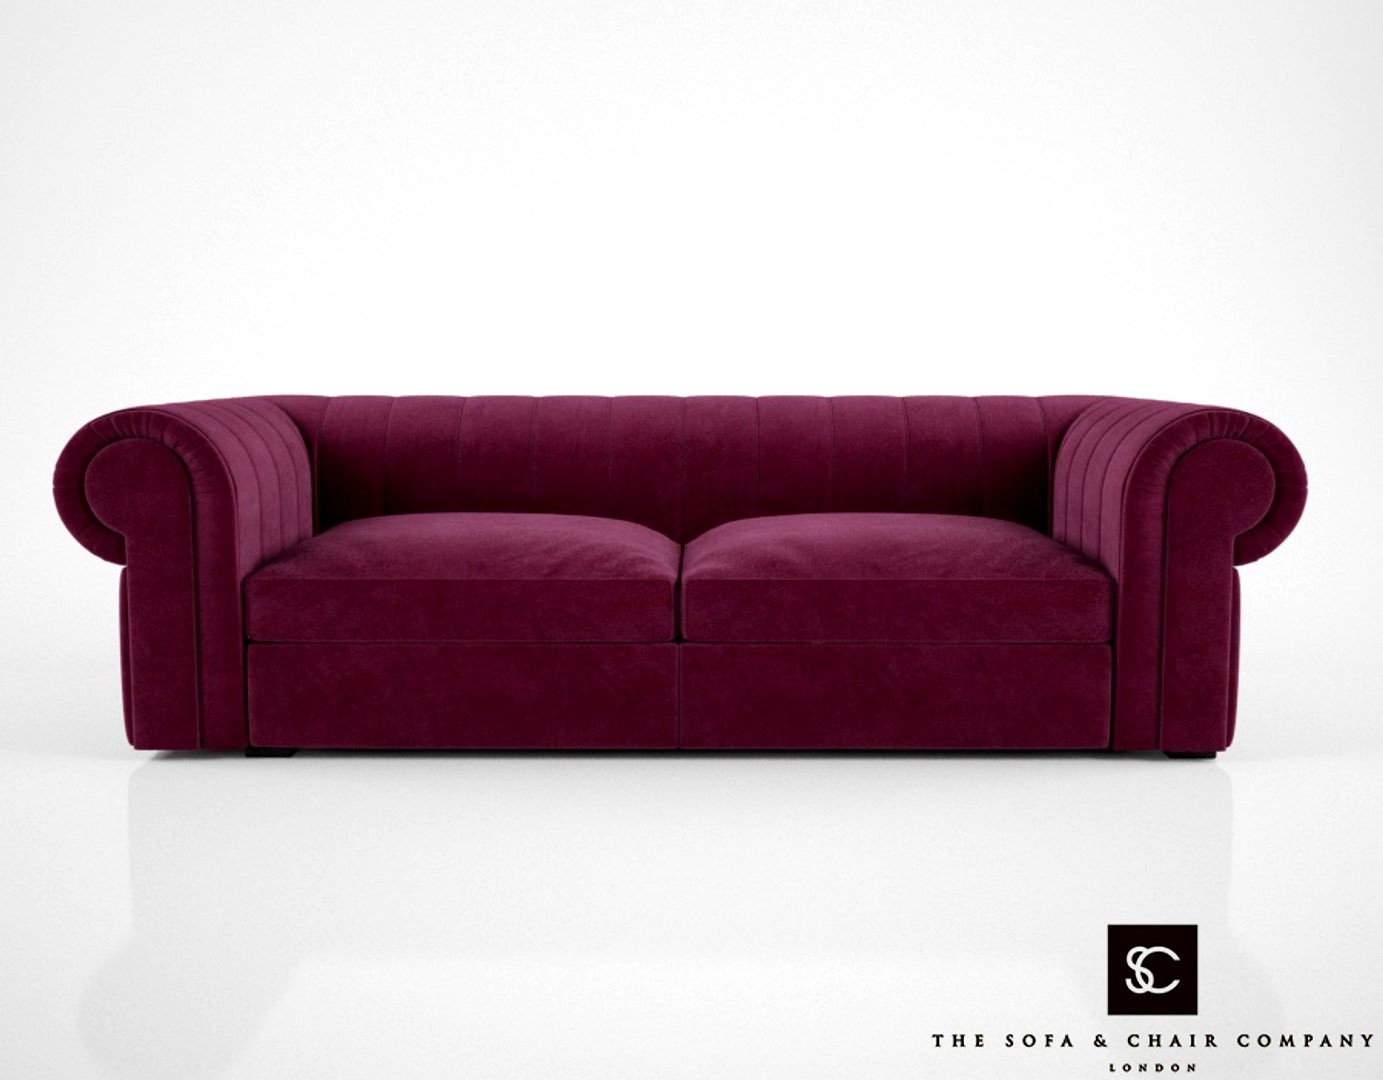 The Sofa and Chair Company Renato Sofa